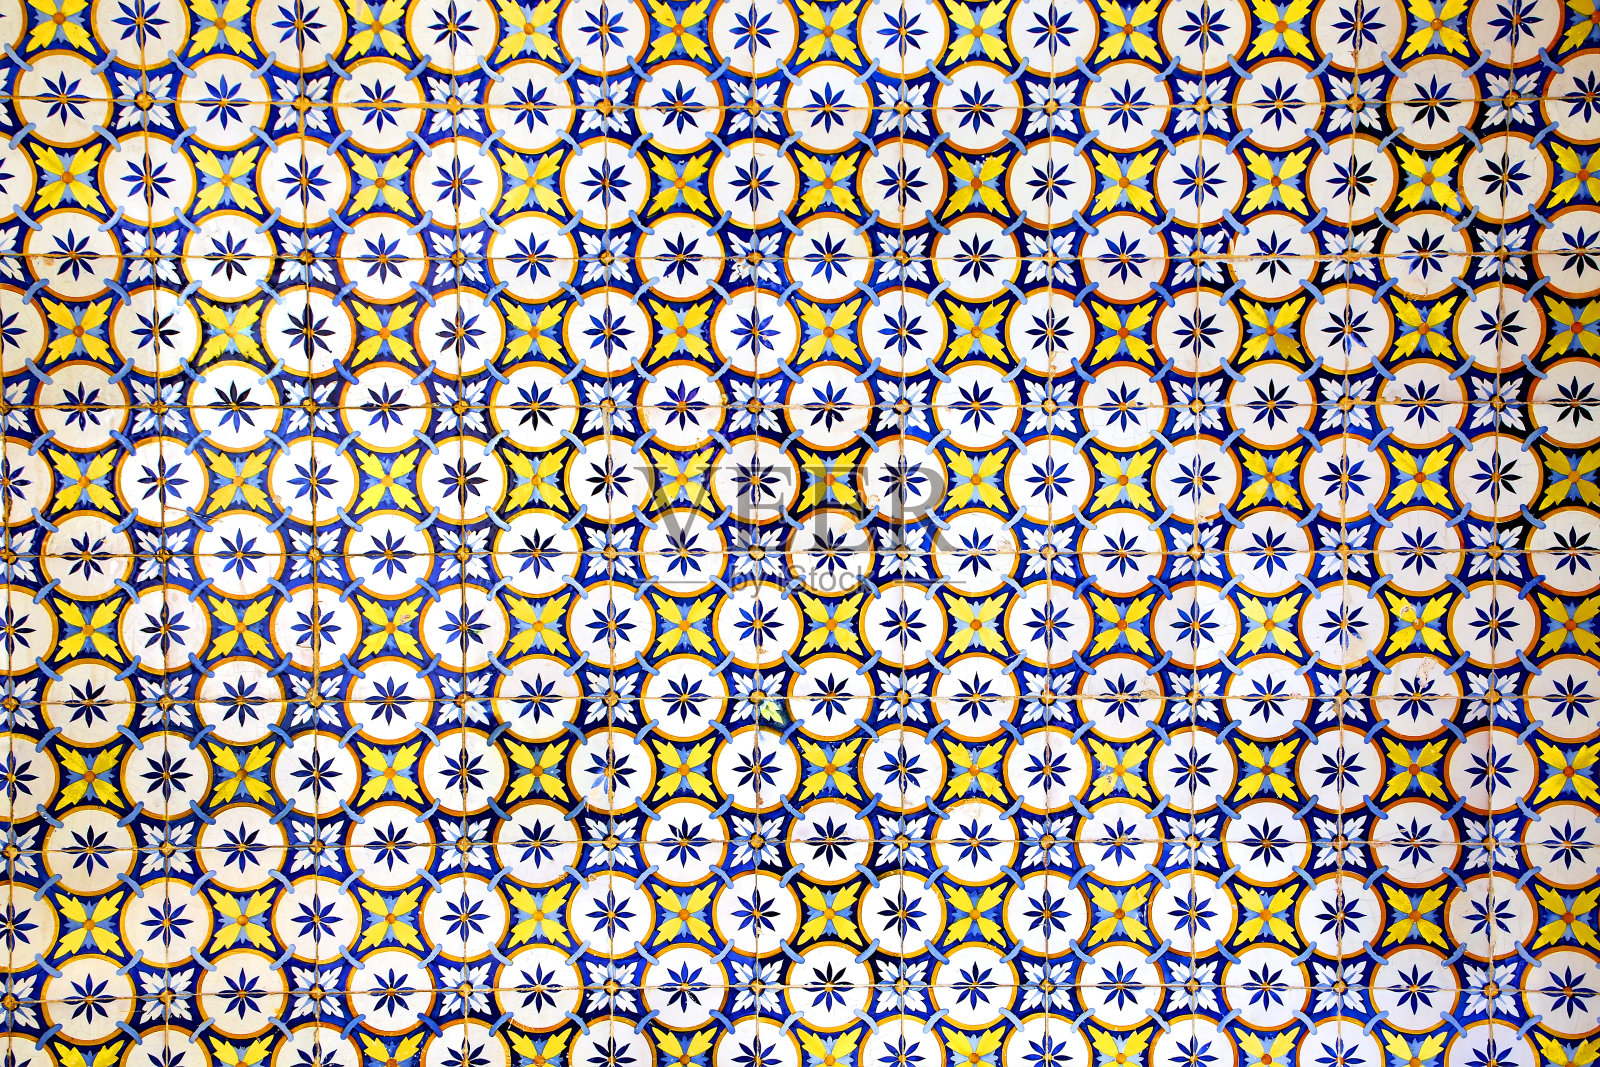 葡萄牙里斯本的许多建筑都采用了传统的蓝色、黄色和白色釉面瓷砖。这些葡萄牙瓷砖有许多不同的几何或花卉图案和颜色。照片摄影图片